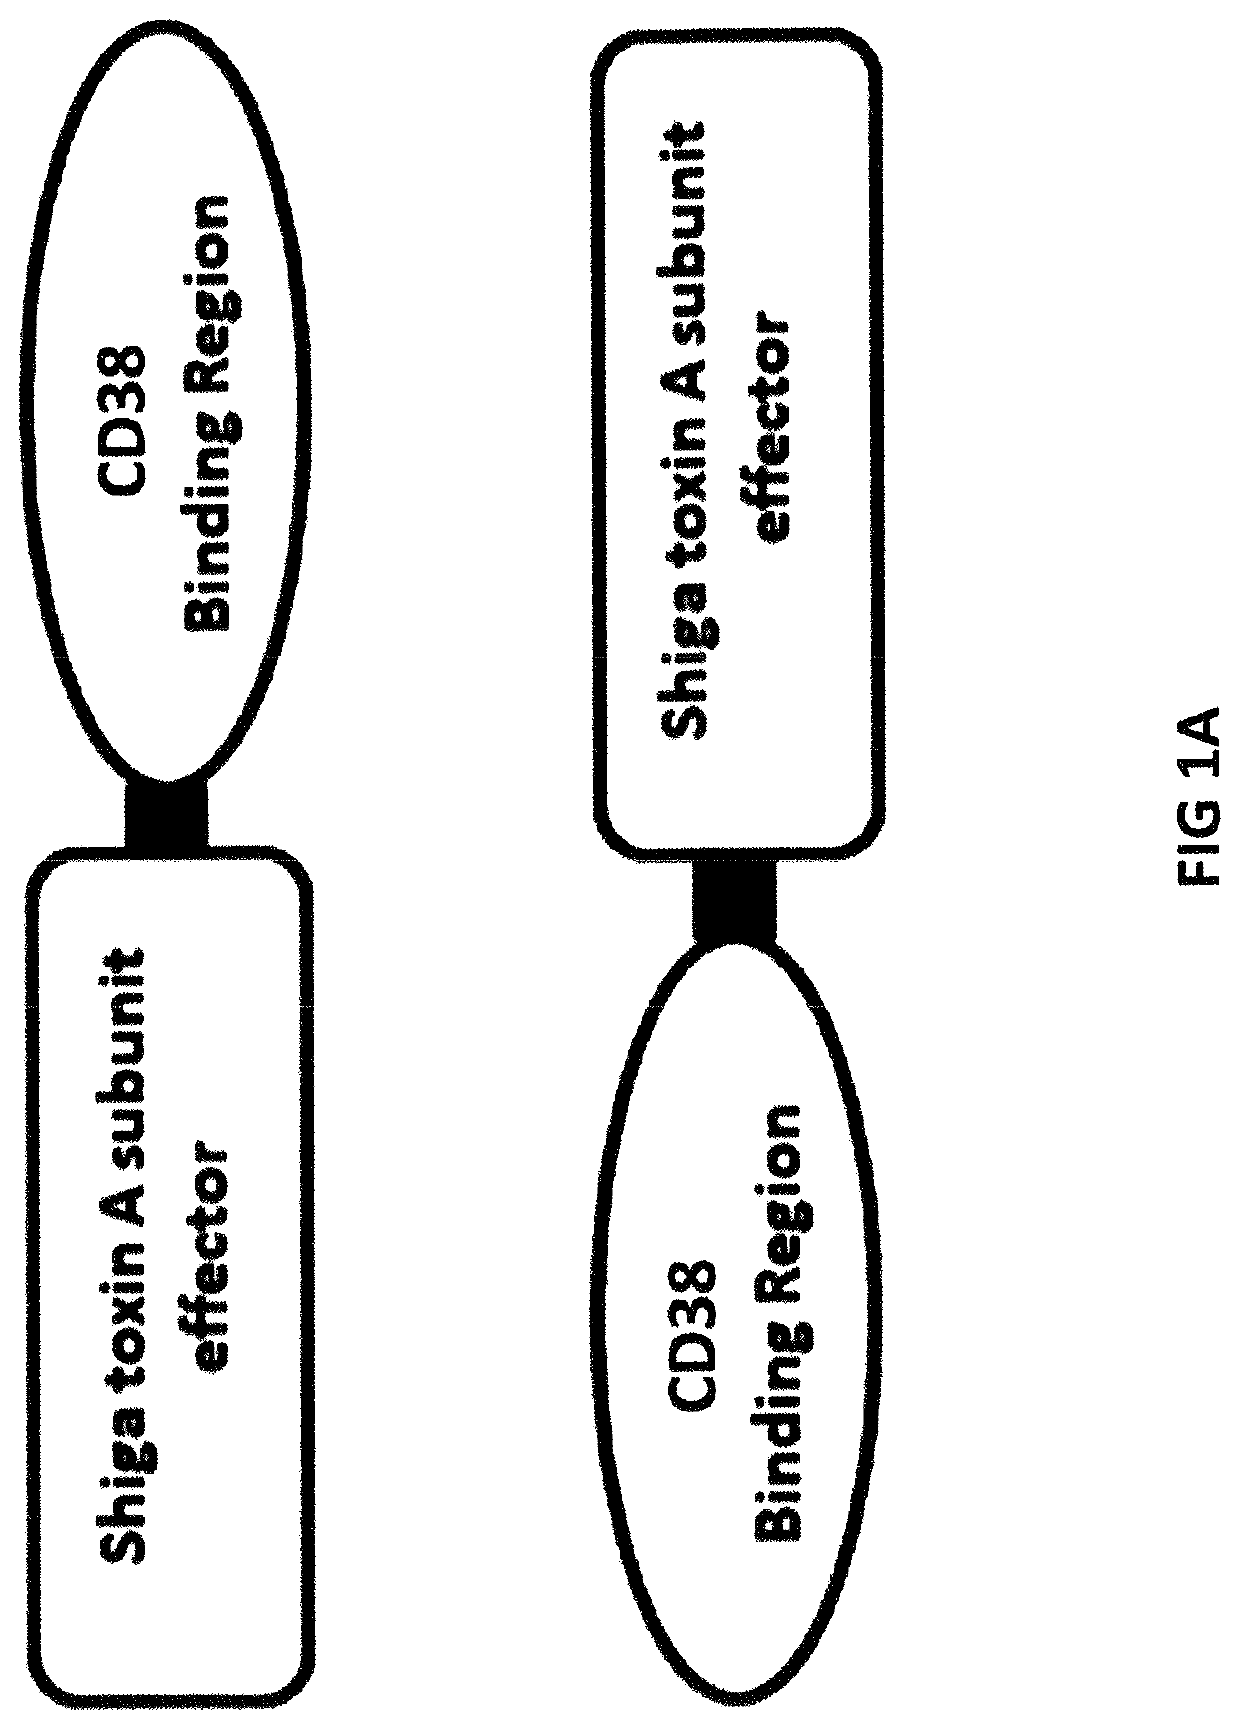 Cd38-binding proteins comprising de-immunized shiga toxin a subunit effectors